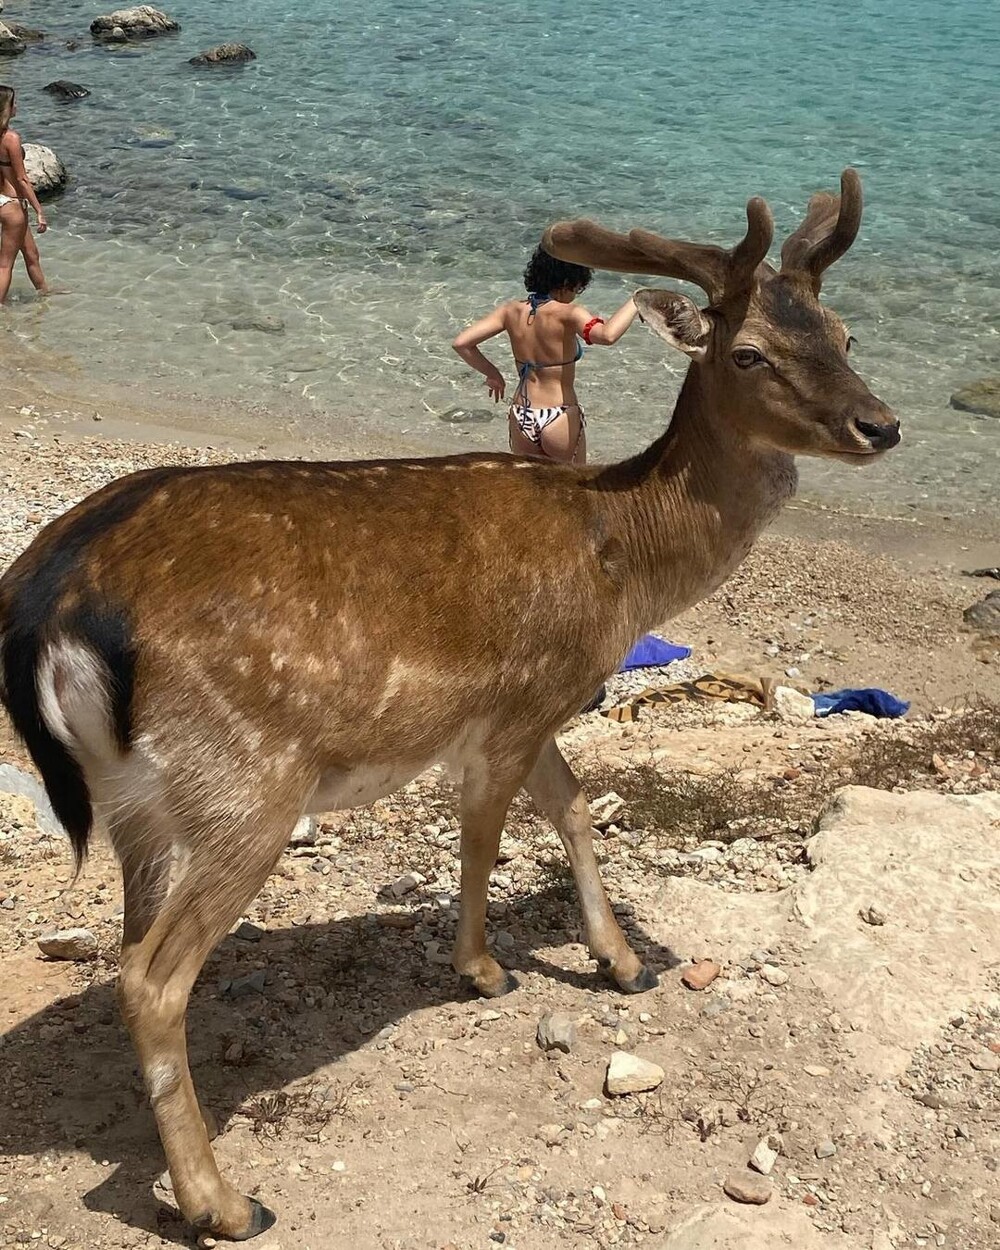 Греческий остров, где никто не живет и экзотические животные свободно разгуливают по песчаным пляжам